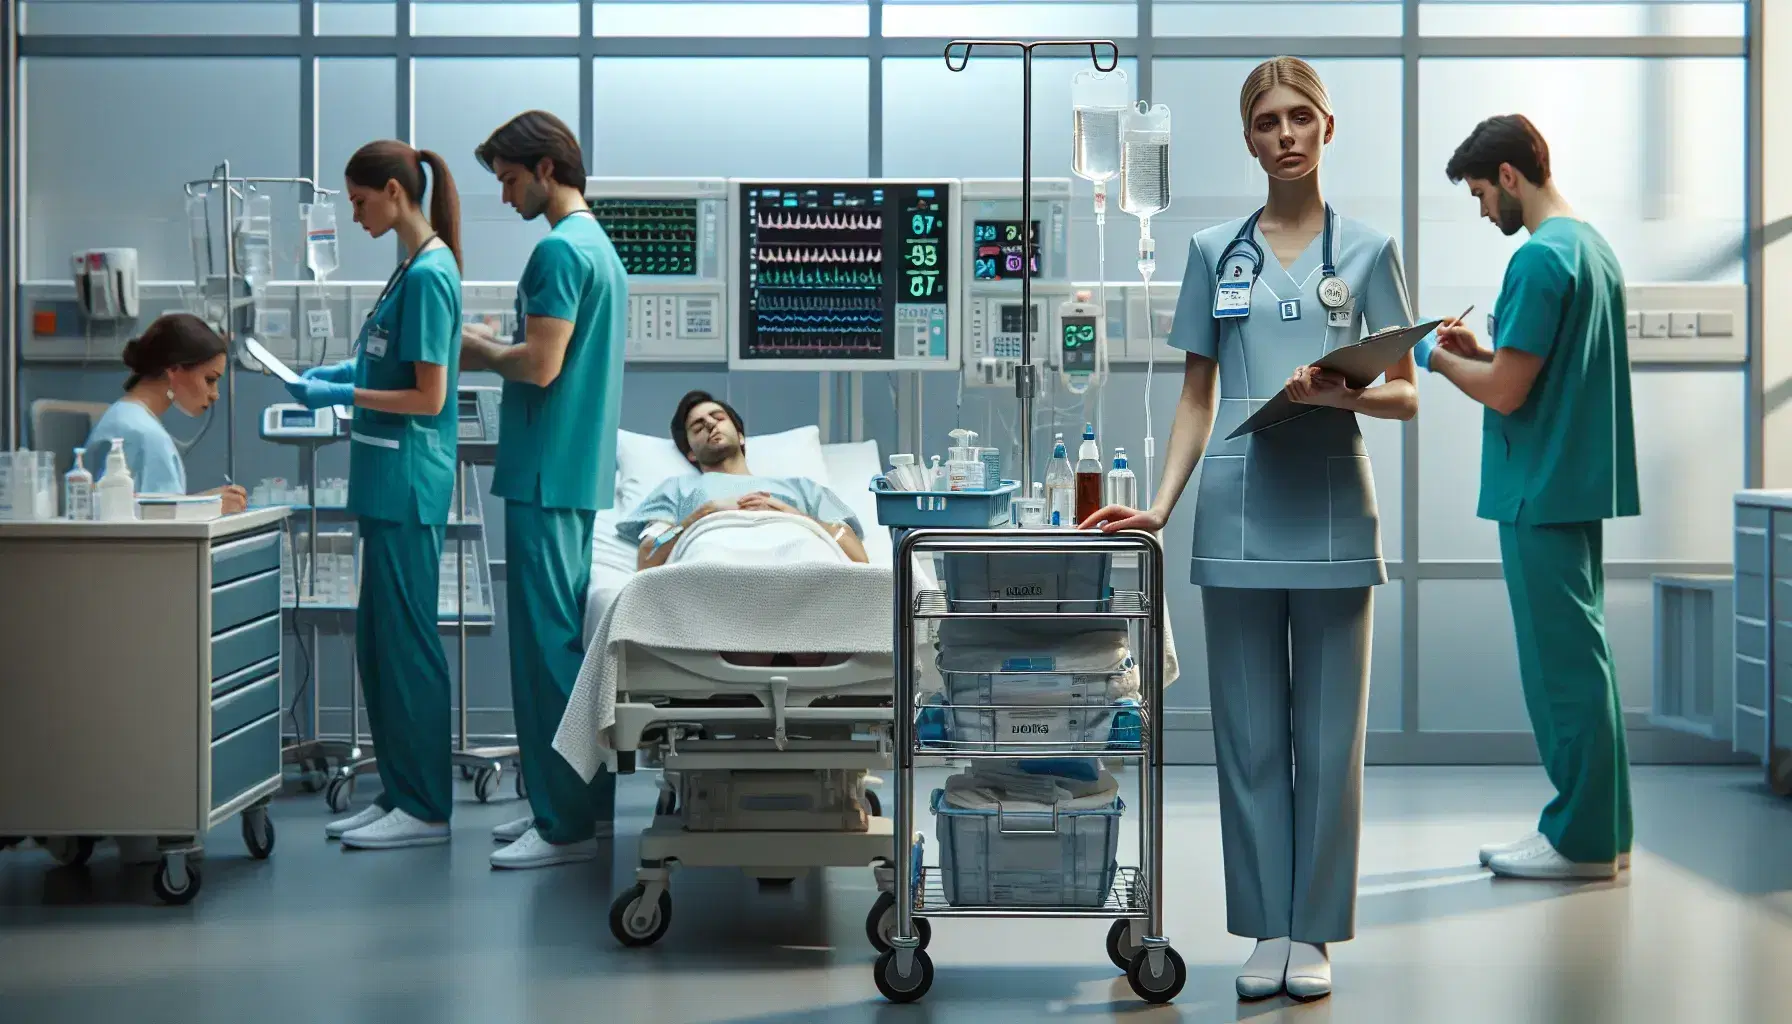 Enfermera ajustando suero a paciente en cama de hospital, con carro de instrumentos médicos al lado y otro enfermero anotando datos en el fondo.